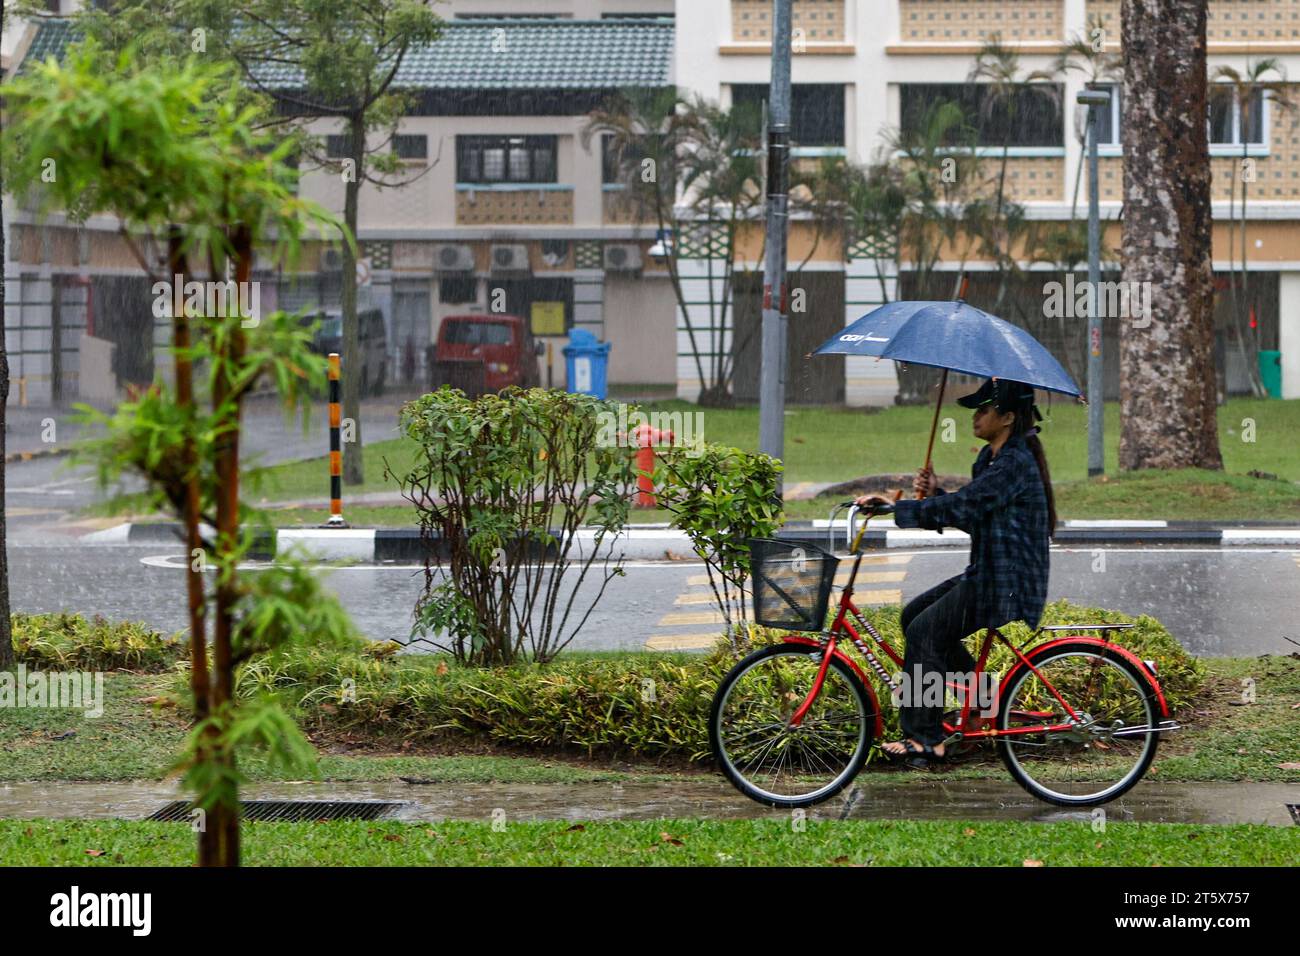 Singapur, Singapur, Singapur. November 2023. Eine Frau hält einen Regenschirm, während sie bei starkem Regen radelt, was eine Pause von den höchsten Temperaturen im Oktober bringt. Angesichts der globalen Erwärmung und des Klimawandels positioniert sich Singapur als CO2-Drehscheibe Asiens, indem es CO2-Steuern einführt und nachhaltige Energiepolitiken umsetzt und gleichzeitig versucht, den Stadtstaat durch das Pflanzen weiterer Bäume grüner zu machen. (Kreditbild: © Daniel Ceng Shou-Yi/ZUMA Press Wire) NUR REDAKTIONELLE VERWENDUNG! Nicht für kommerzielle ZWECKE! Stockfoto